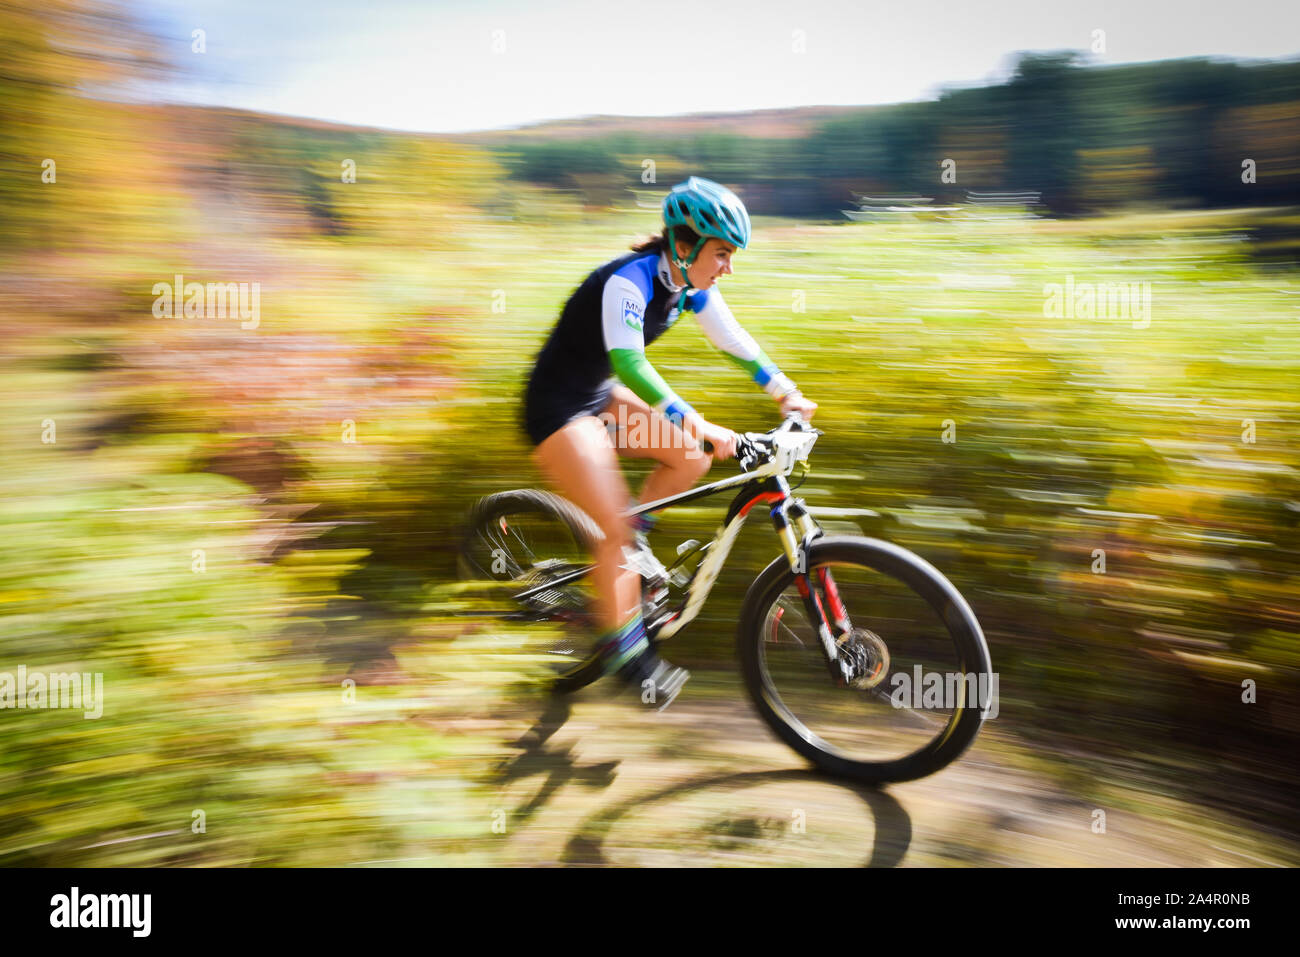 Les cyclistes en compétition dans des courses de cyclo-cross, barrage Wrightsville Cyclo-Cross, Middlesex, VT, USA. Banque D'Images